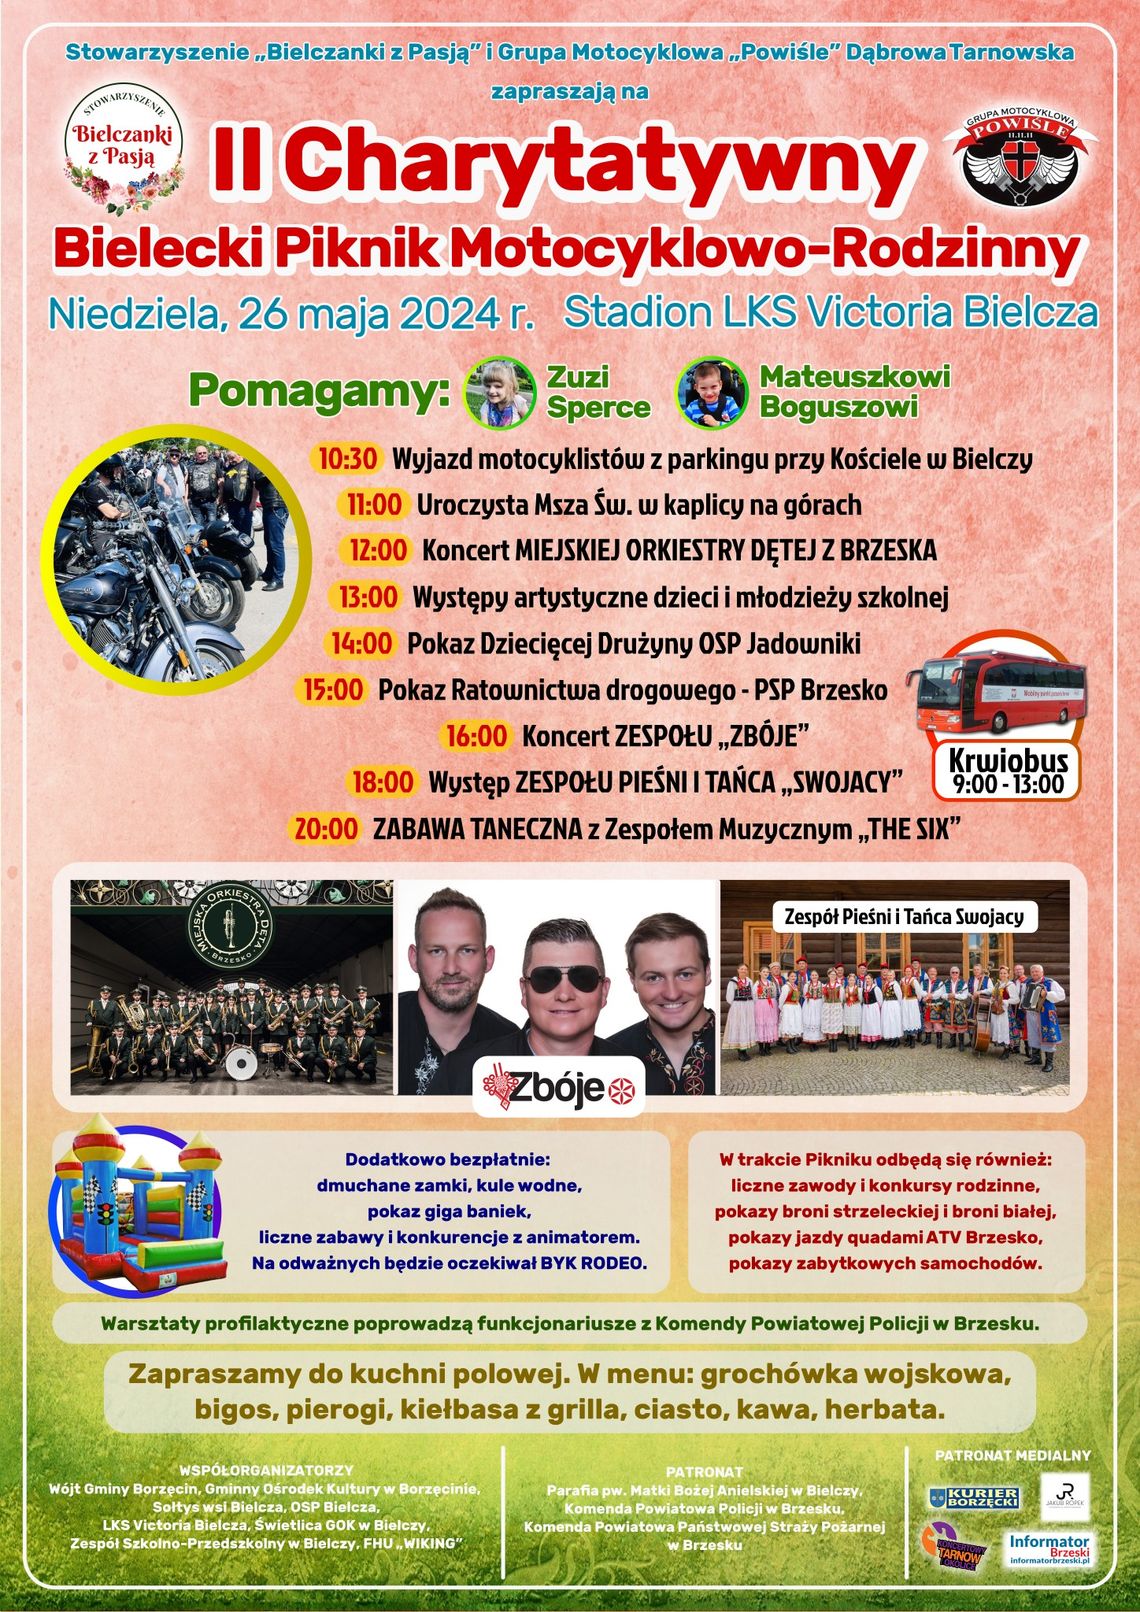 Zapraszamy w niedzielę 26 maja br. do Bielczy na II Charytatywny Bielecki Piknik Motocyklowo-Rodzinny.